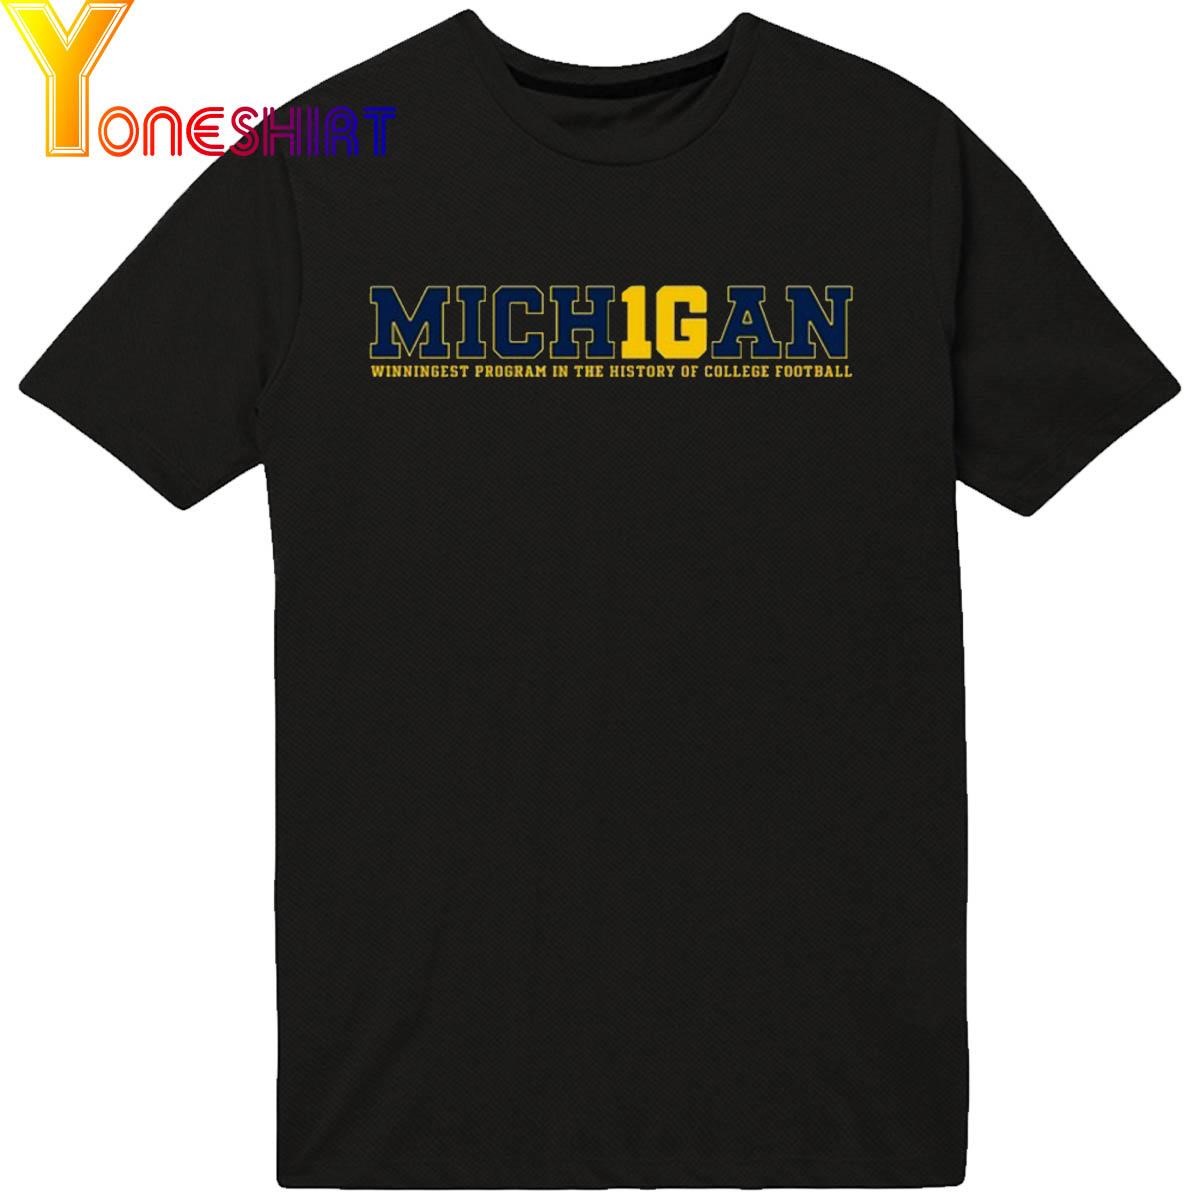 The M Den Michigan 1000 Wins Mich1gan Shirt